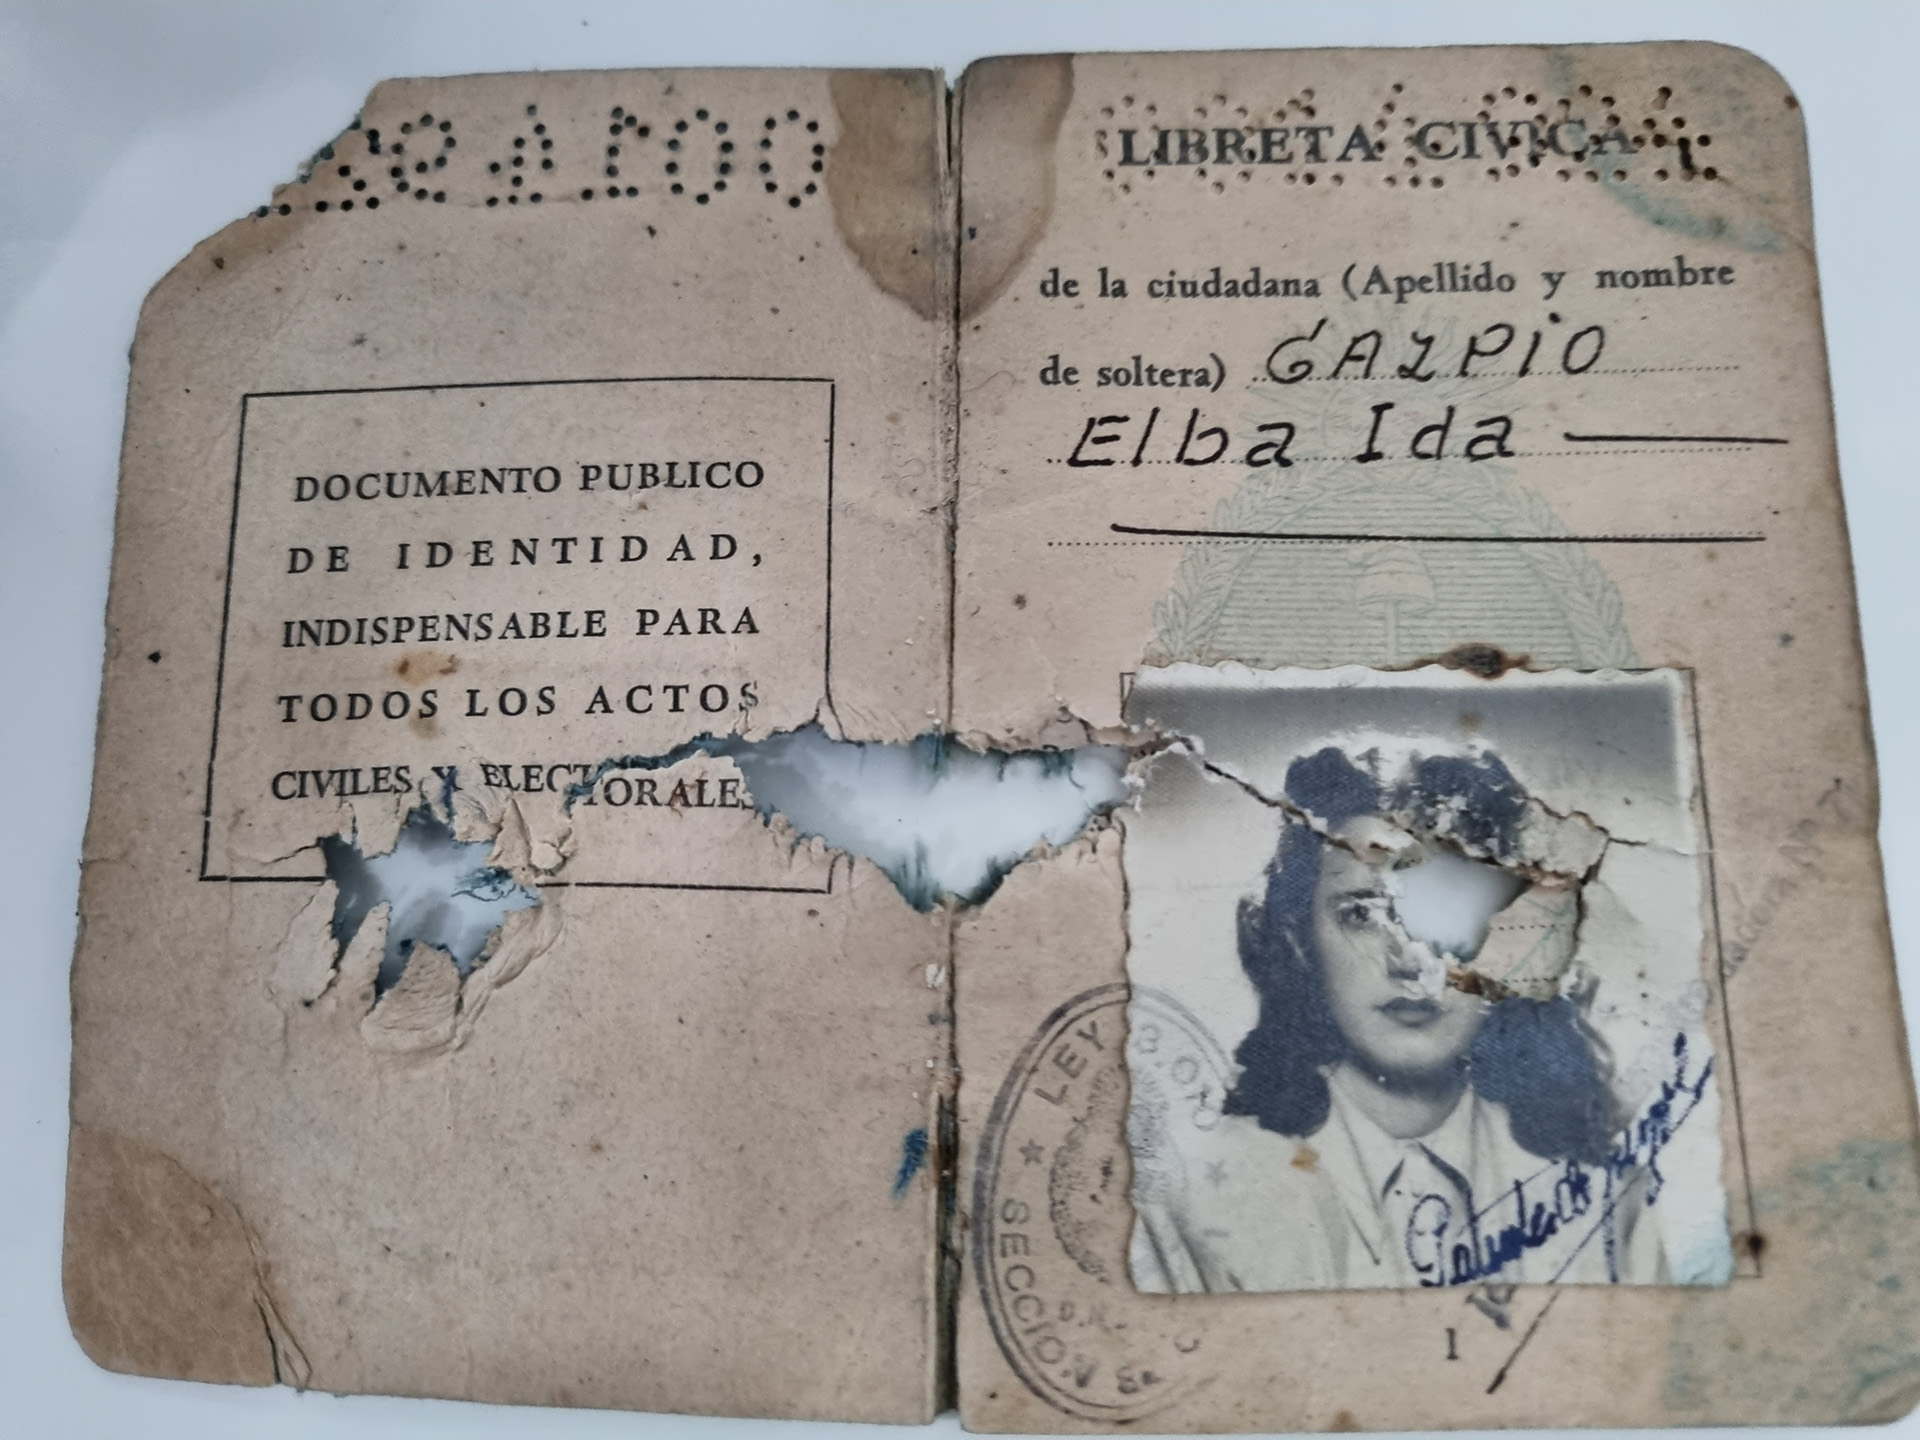 El documento de identidad de la cabo Elsa Gazpio, destruido por las esquirlas de la bomba vietnamita. Ella murió en el acto, decapitada
